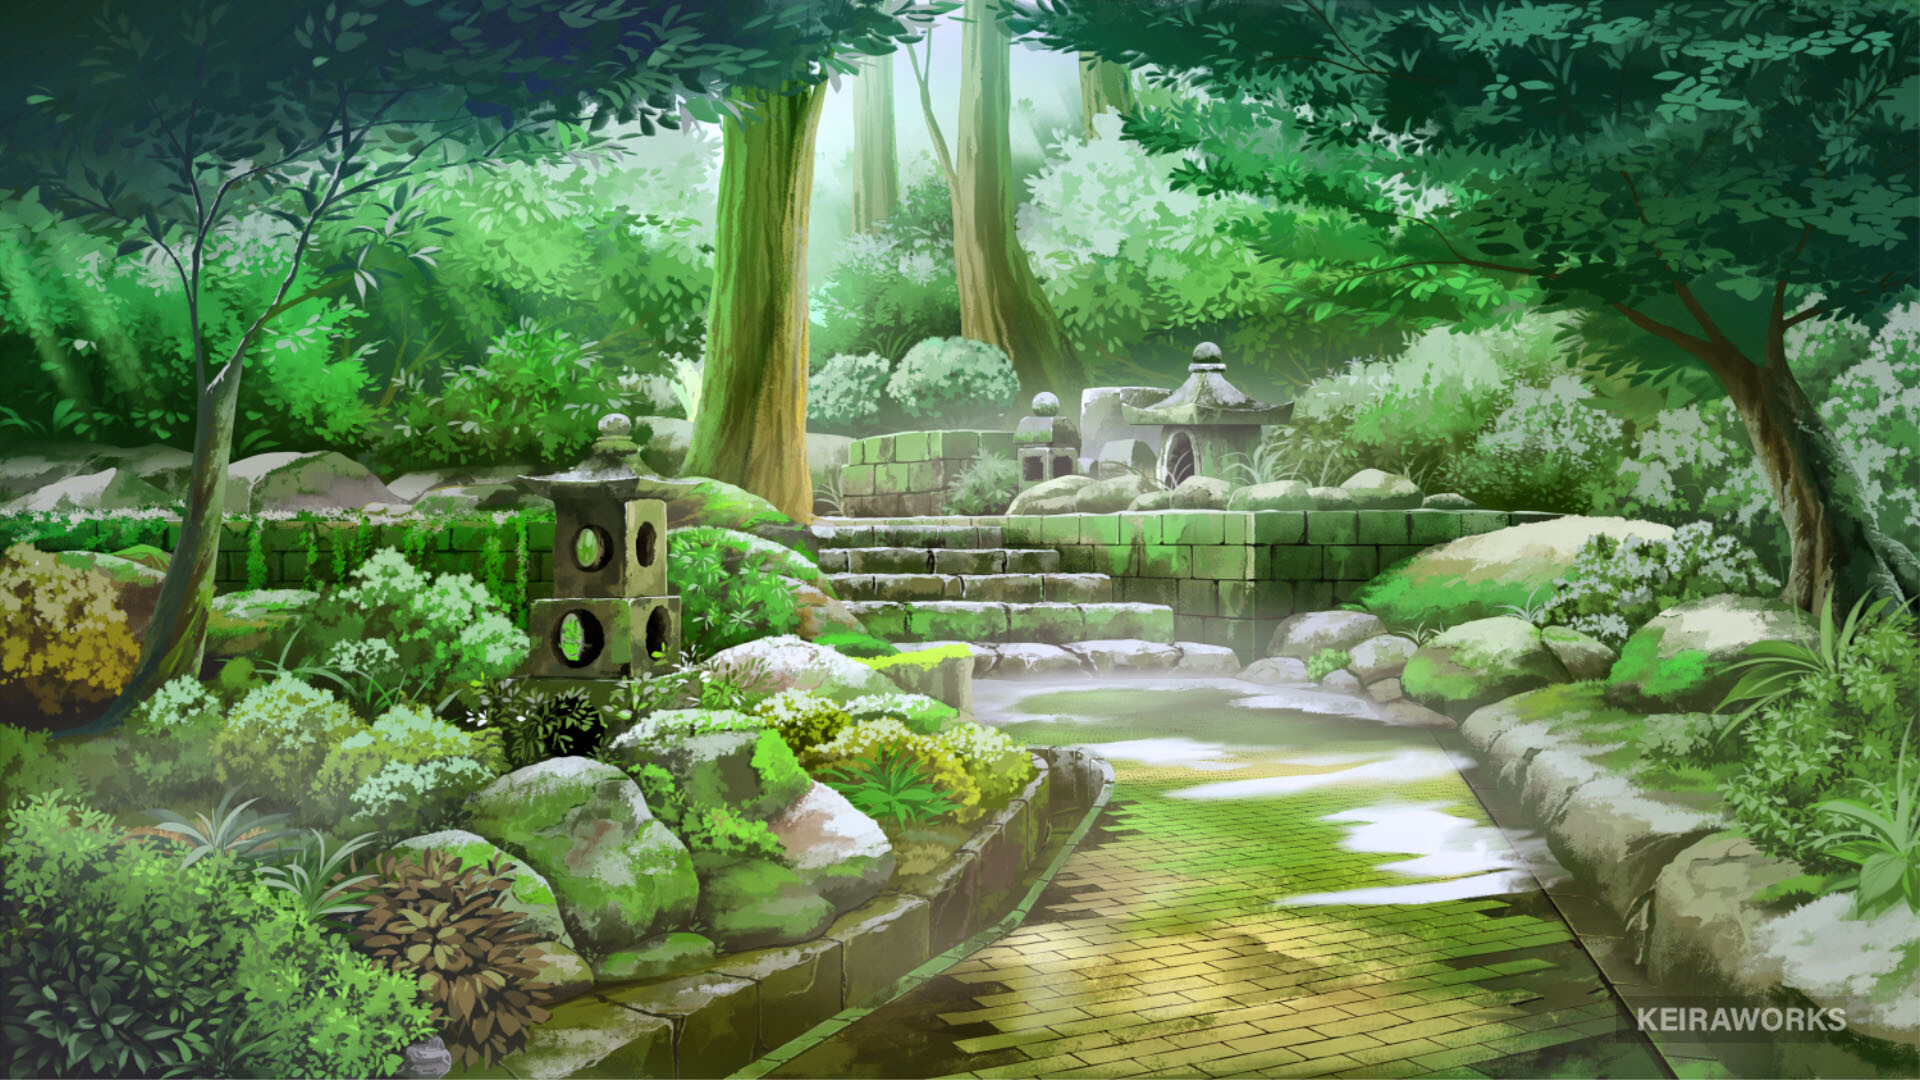 Day Flower Garden Anime Background Illustration Stock Vector Royalty Free  2031474125  Shutterstock